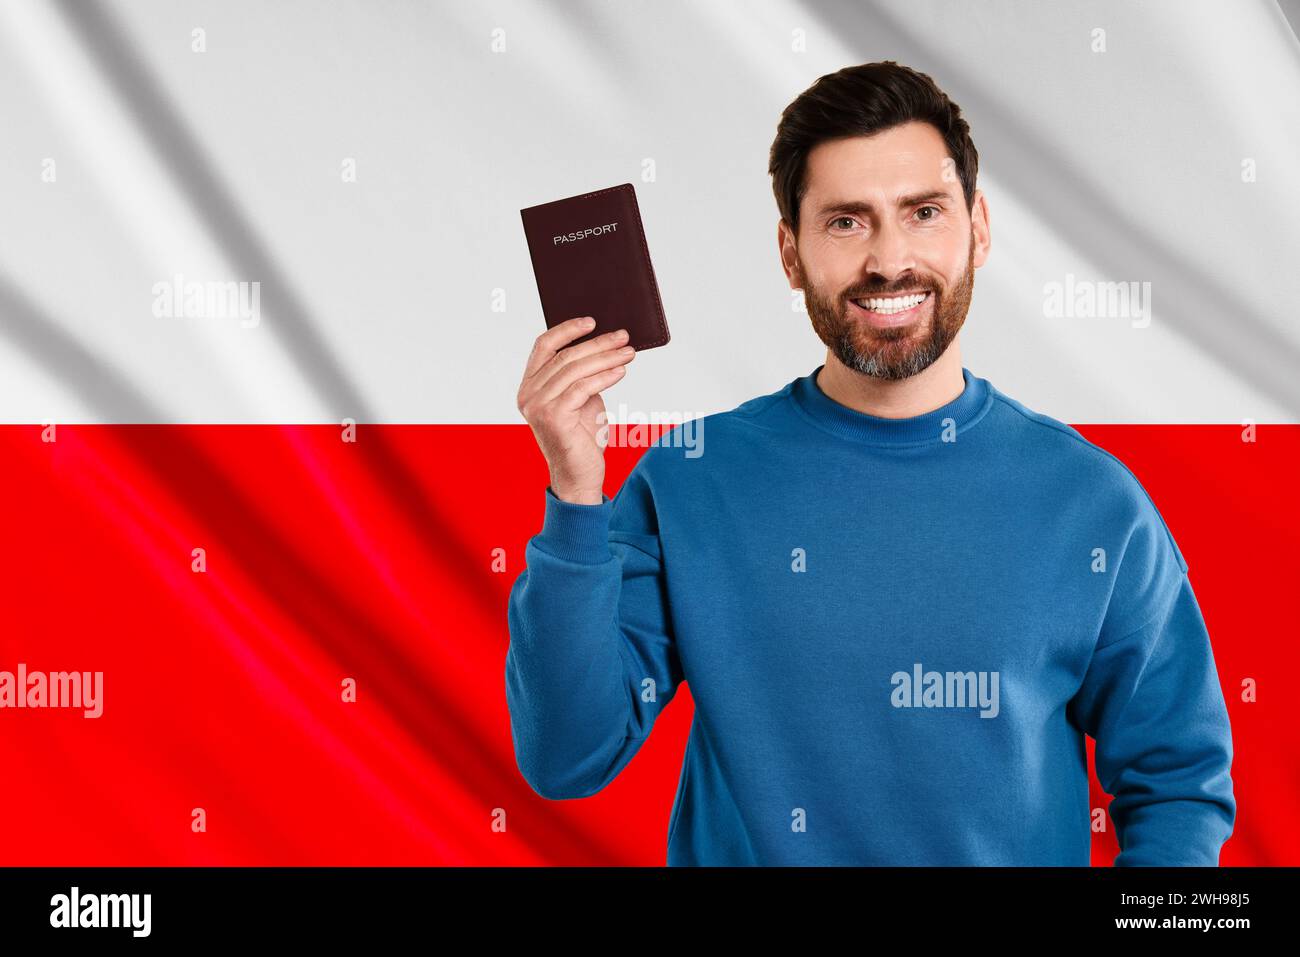 L'immigration. Homme heureux avec passeport contre le drapeau national de la Pologne, espace pour le texte Banque D'Images